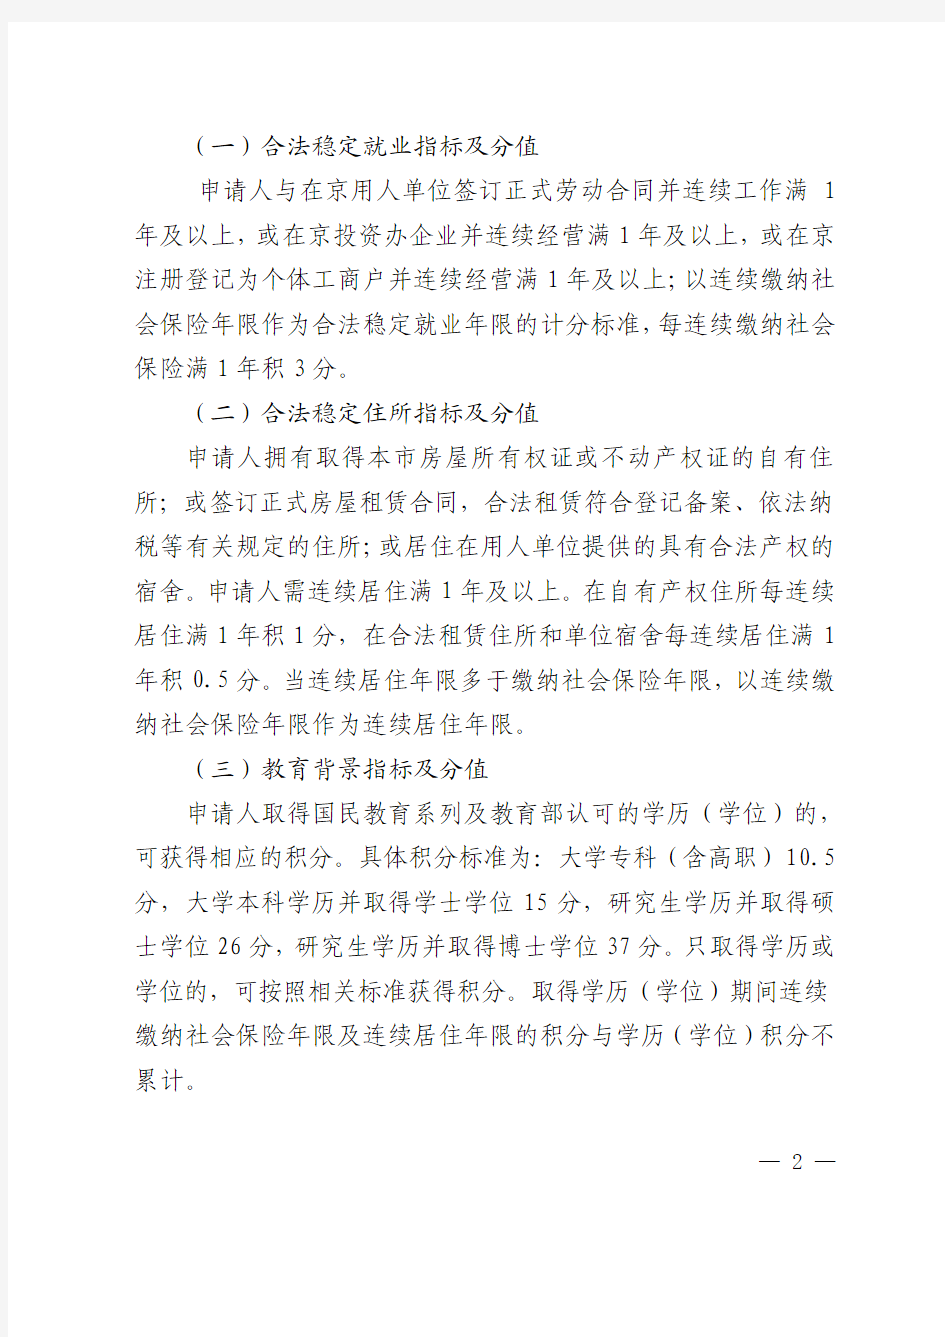 《北京市积分落户管理办法》(征求意见稿)